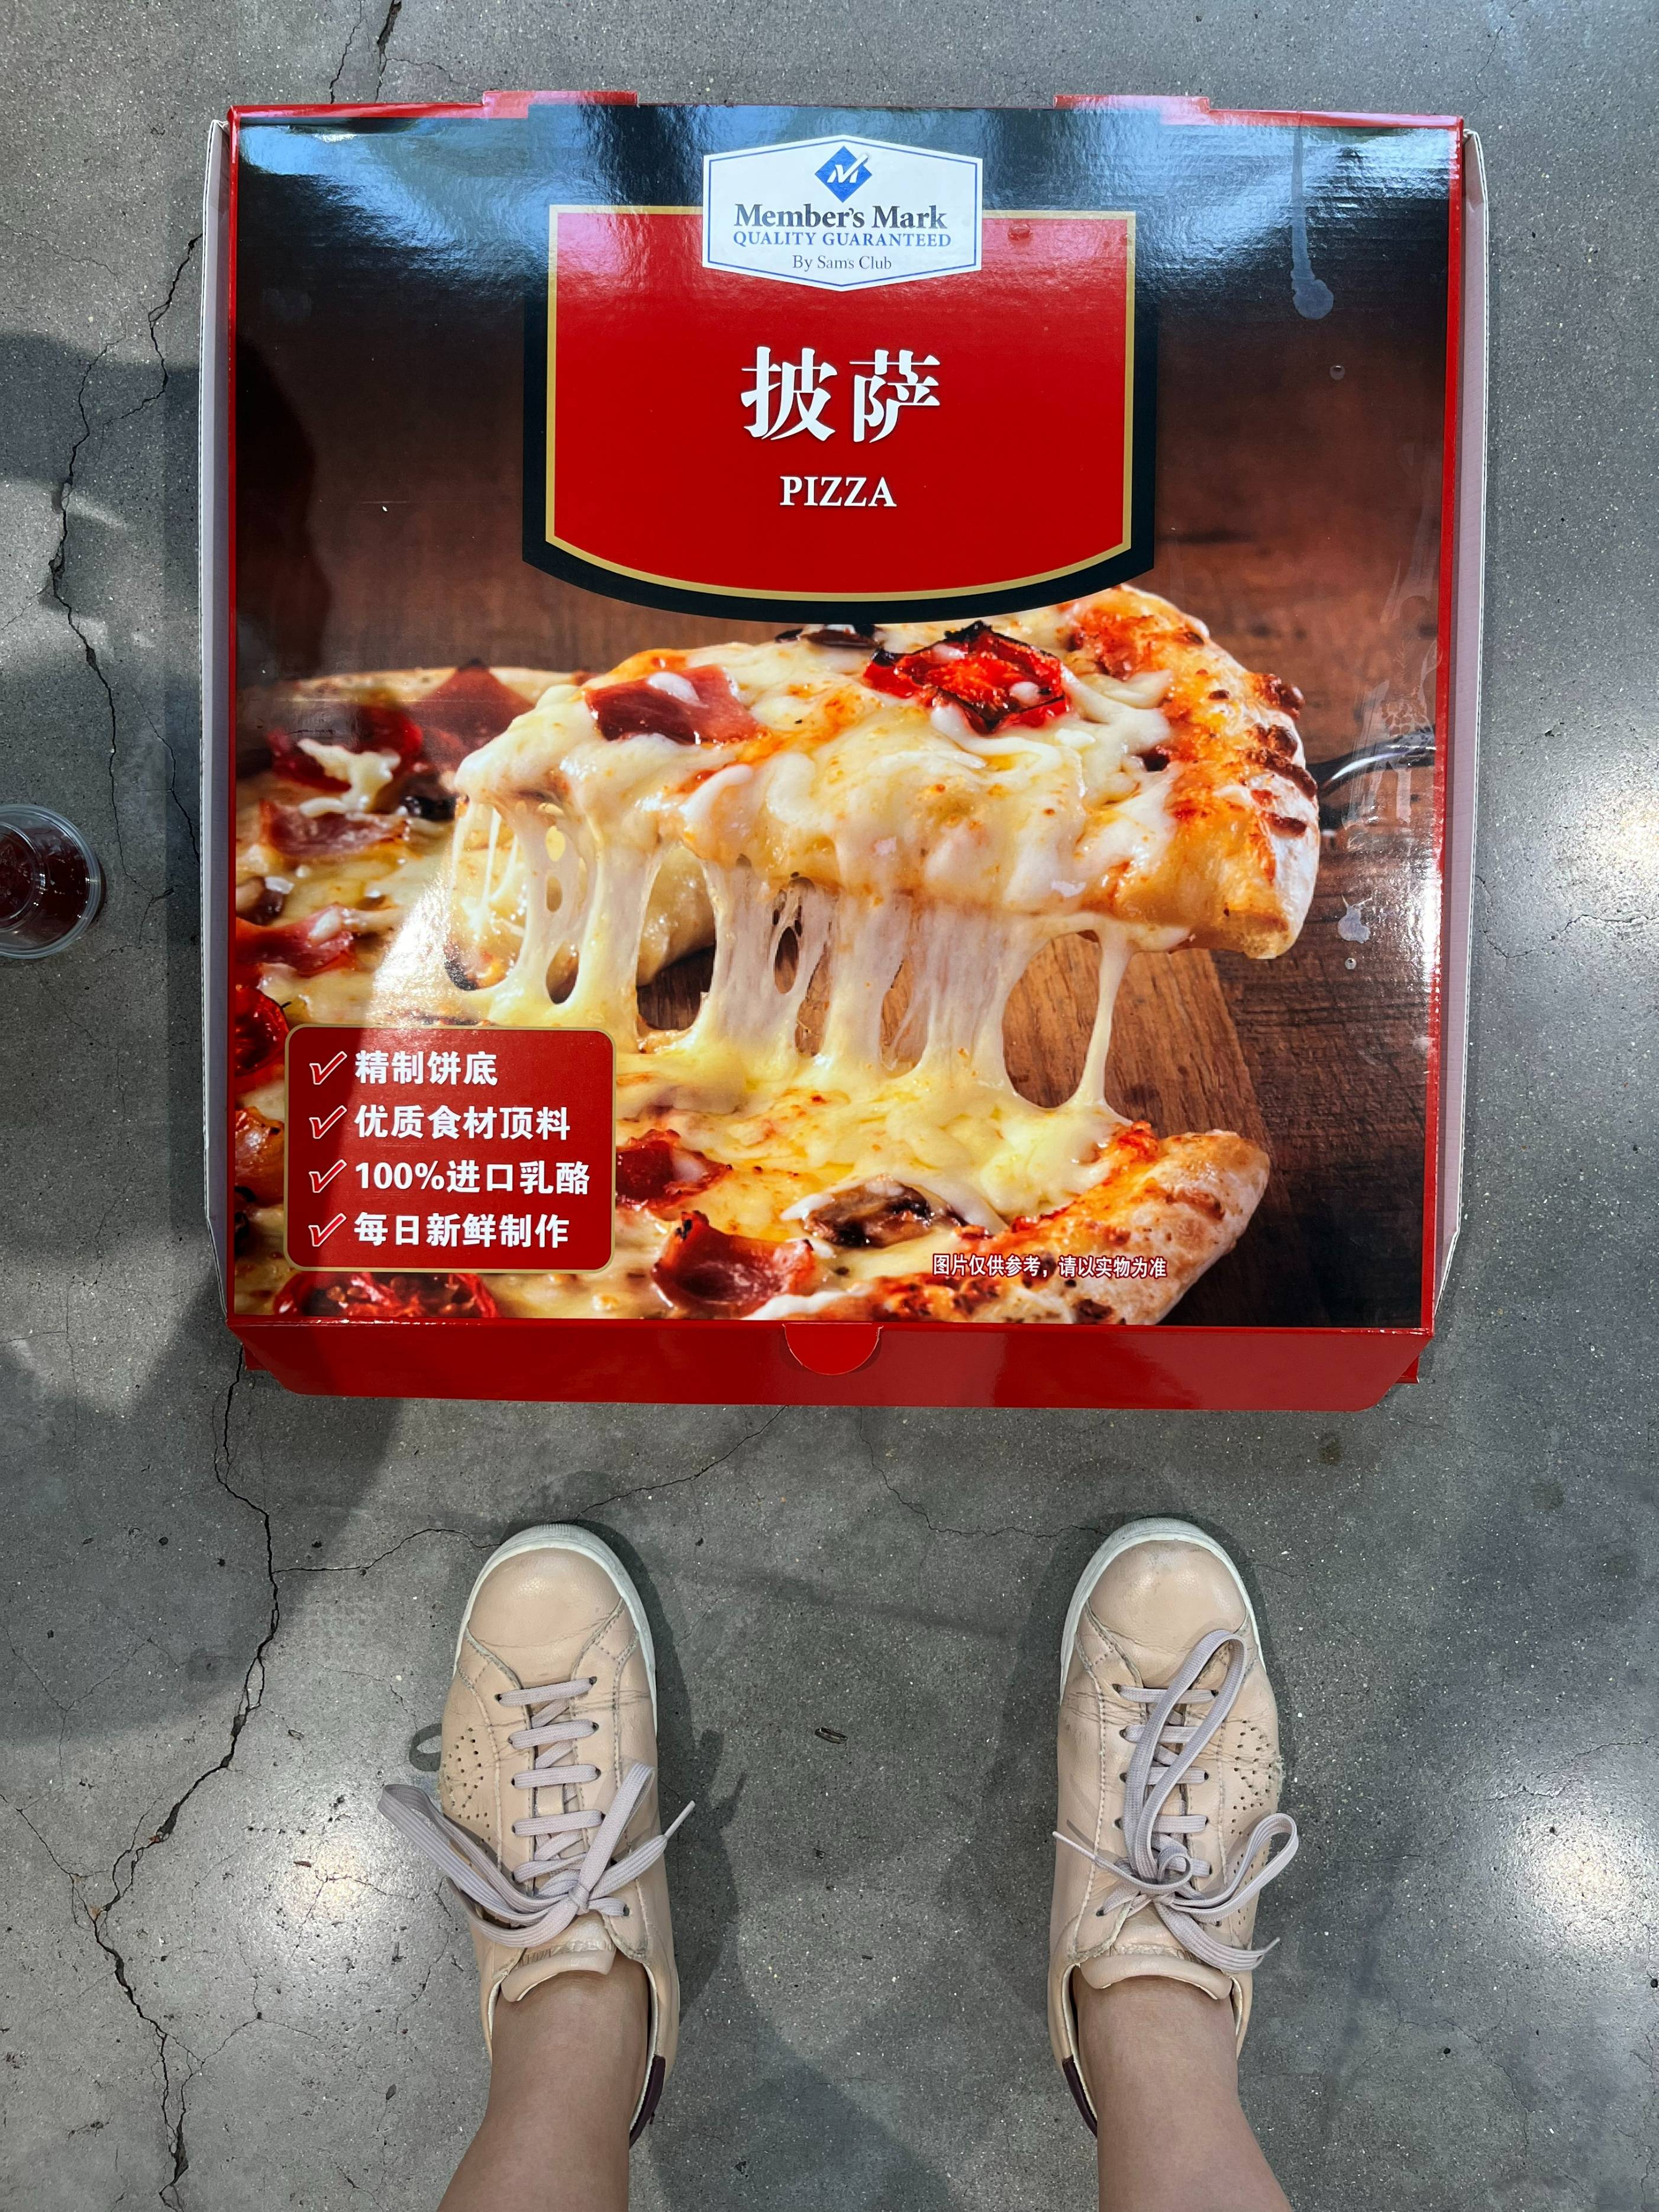 披萨尺寸-图库-五毛网